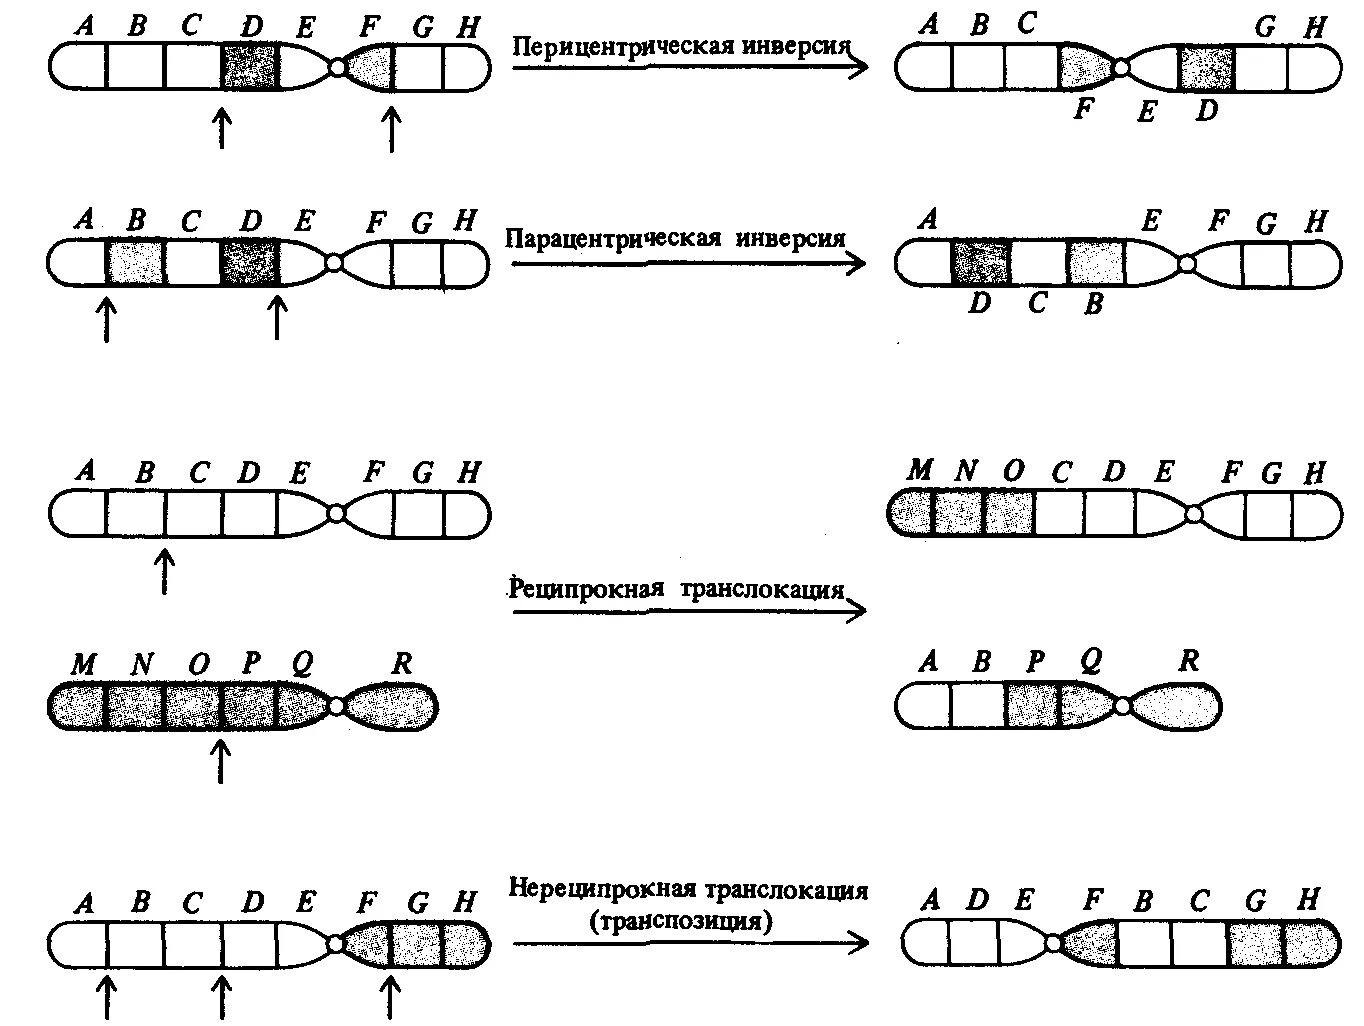 Хромосомные мутации методы генетики. Транслокация хромосом схема. Хромосомные мутации делеция дупликация инверсия транслокация. Хромосомные мутации схема. Транслокация хромосом мутация.